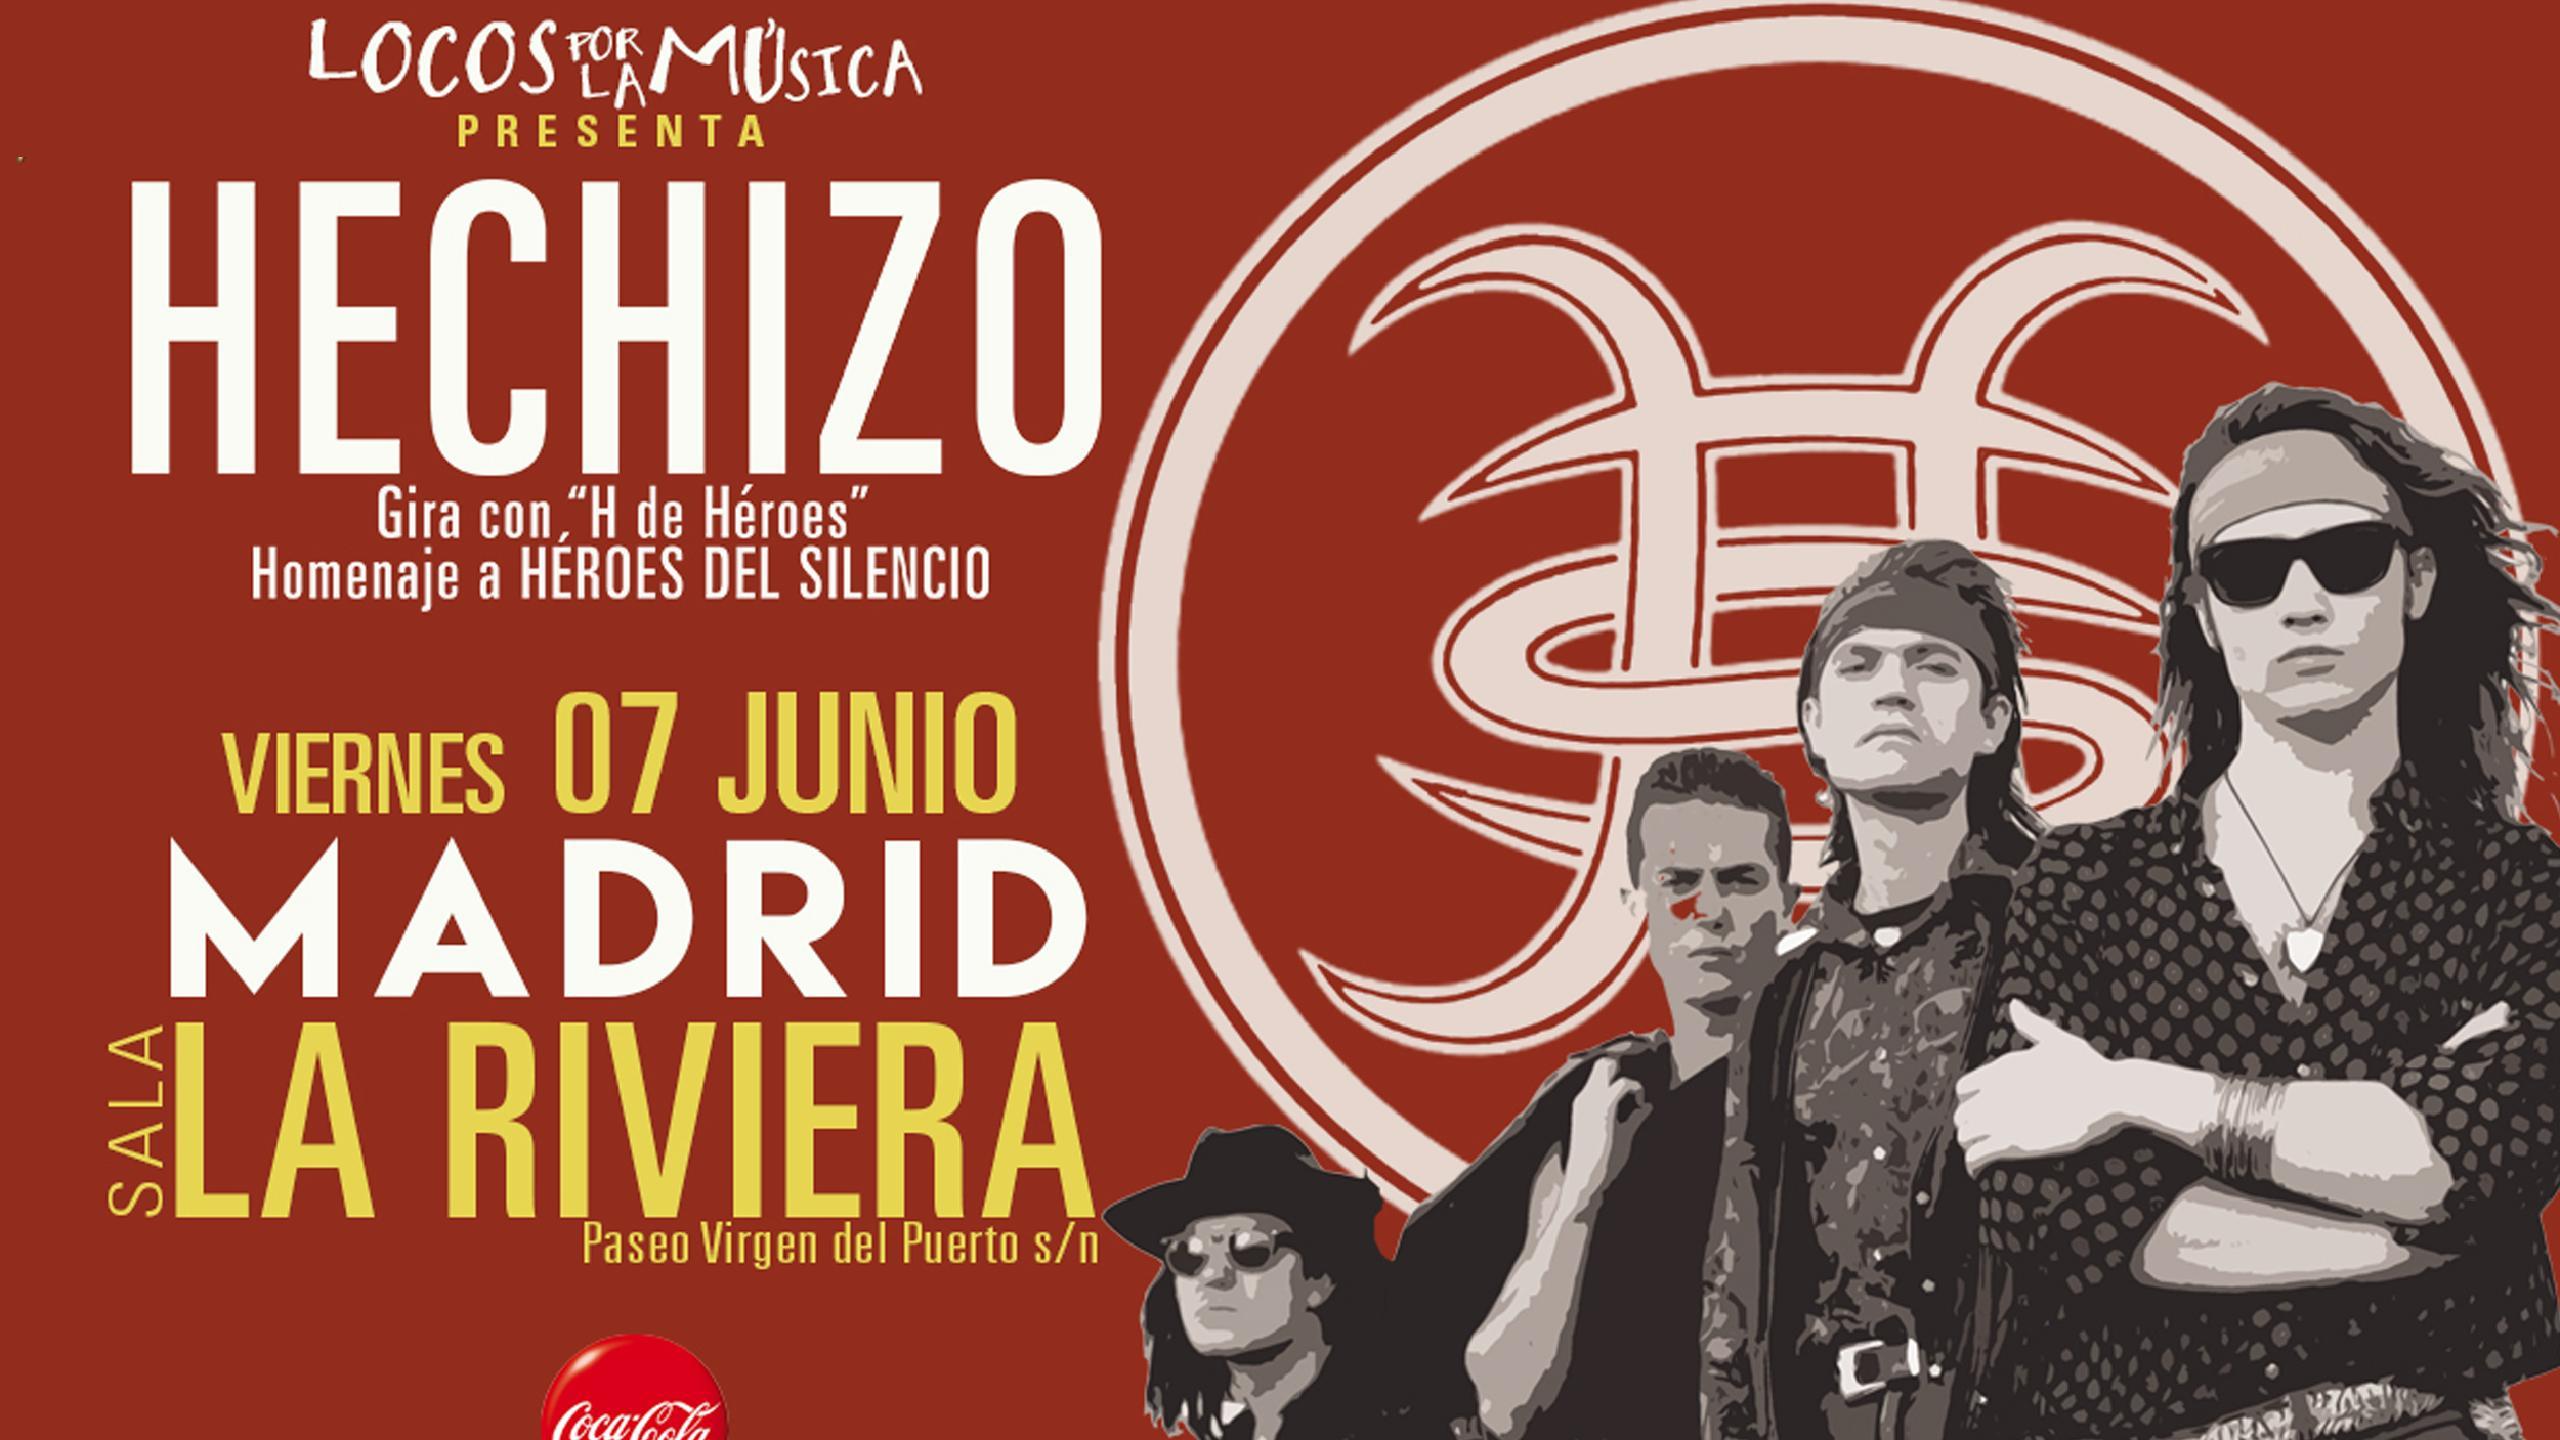 Hechizo (Tributo a Héroes del Silencio) concert tickets for La